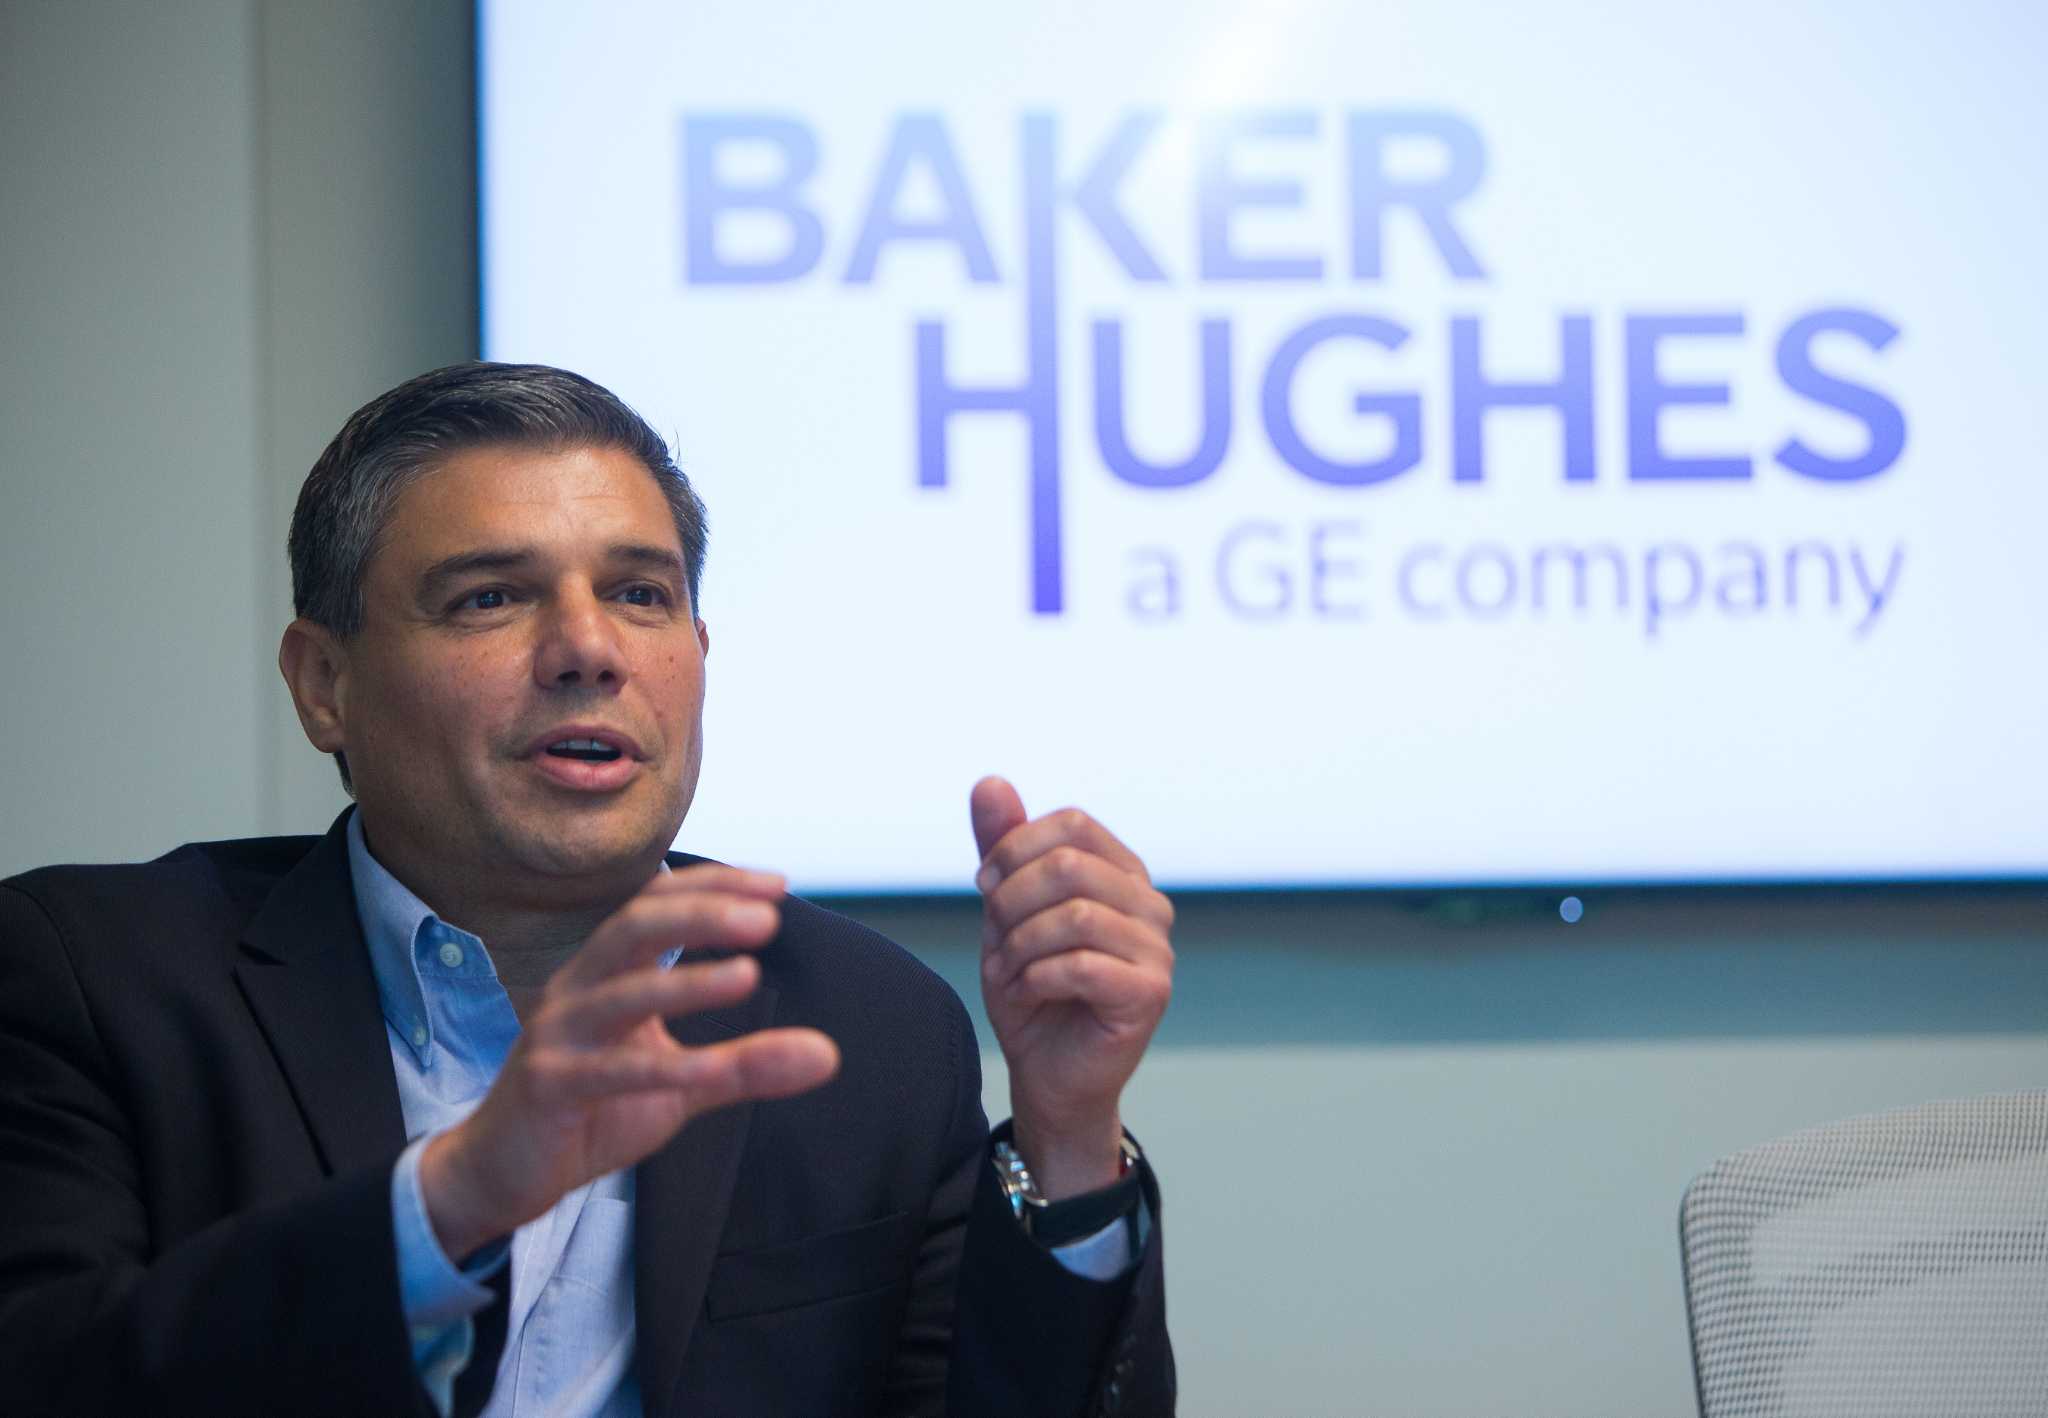 Baker Hughes Sells Dresser Gas Business For 375 Million Houston